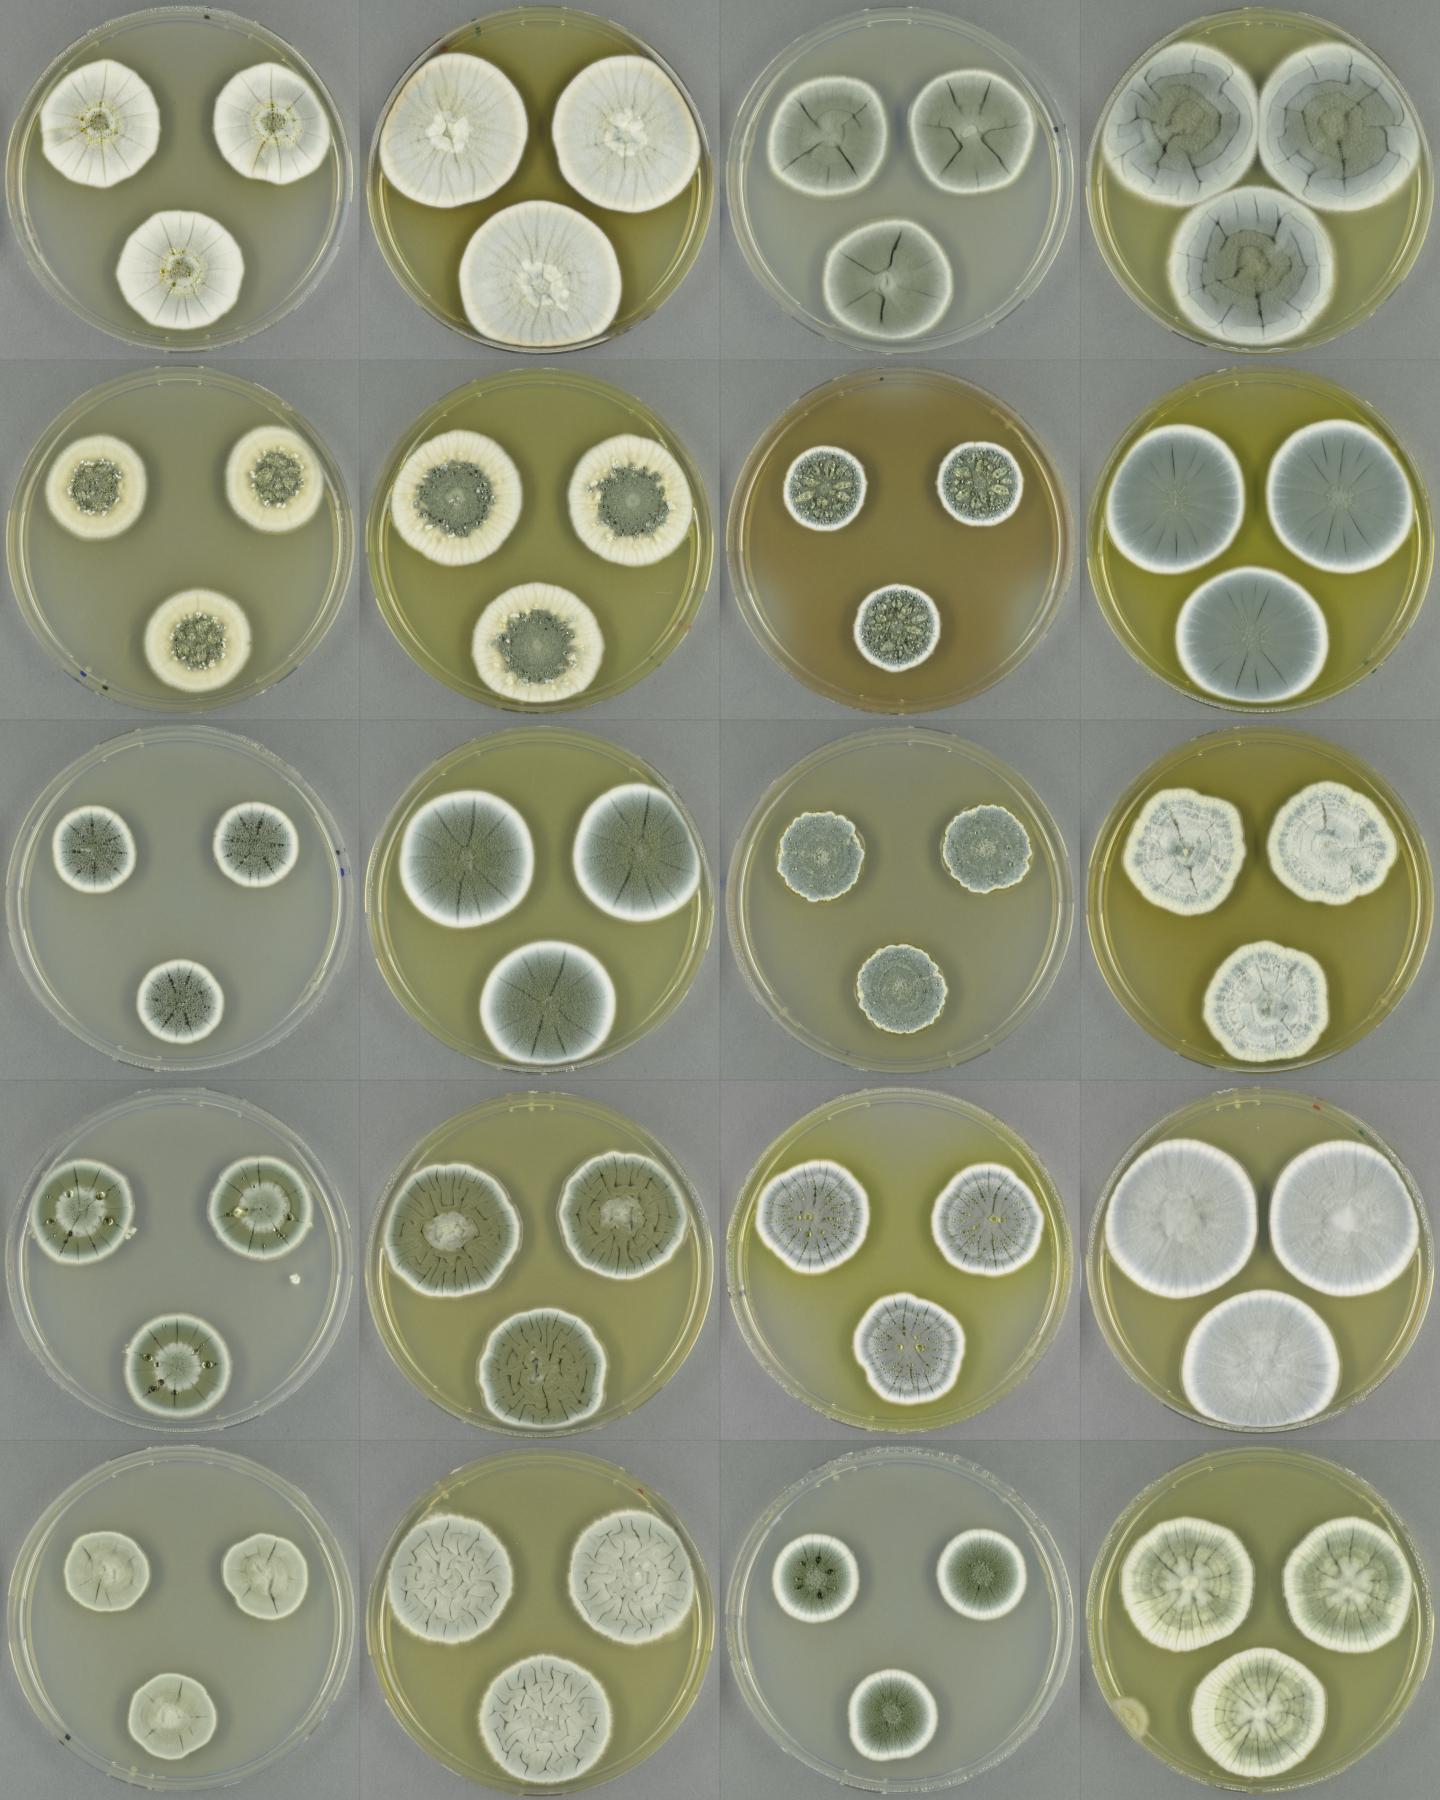 Colonies of <i>Penicillium</i> Fungi Species on Agar Plates